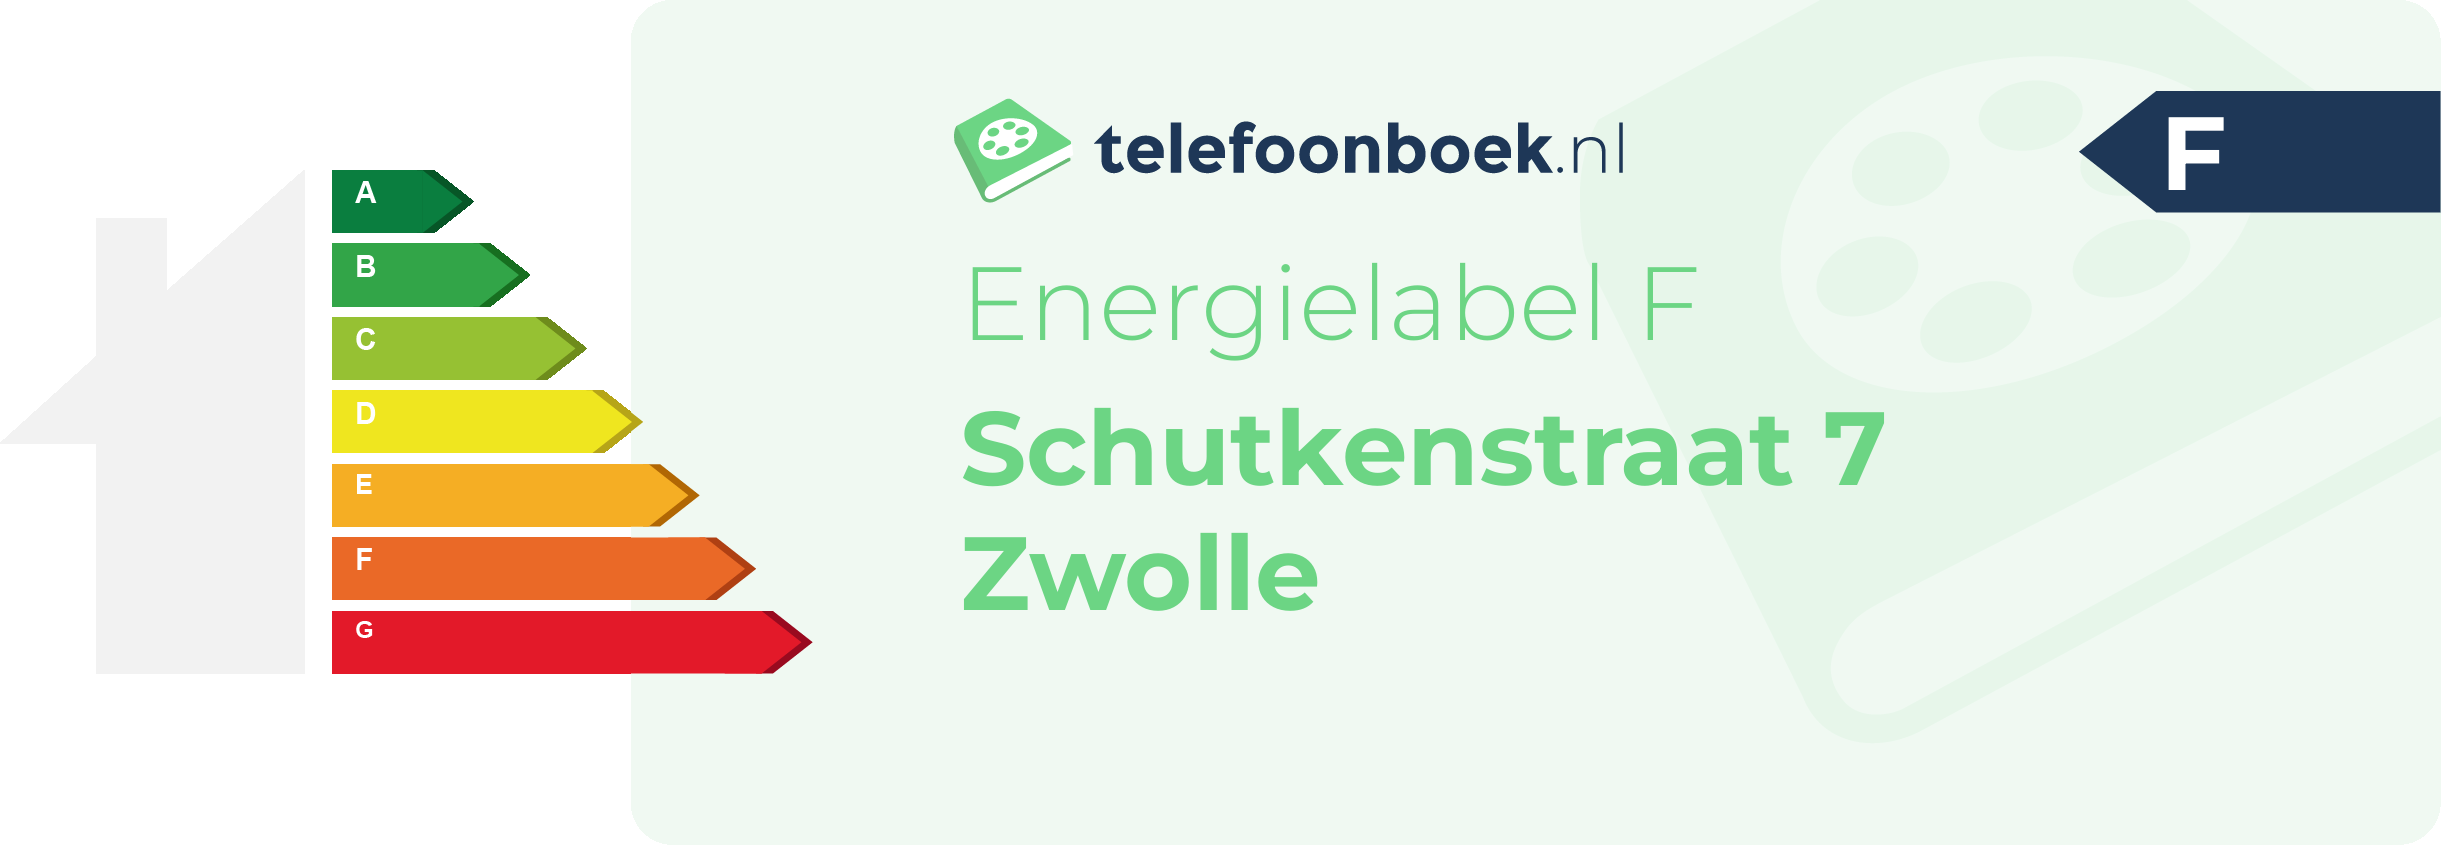 Energielabel Schutkenstraat 7 Zwolle